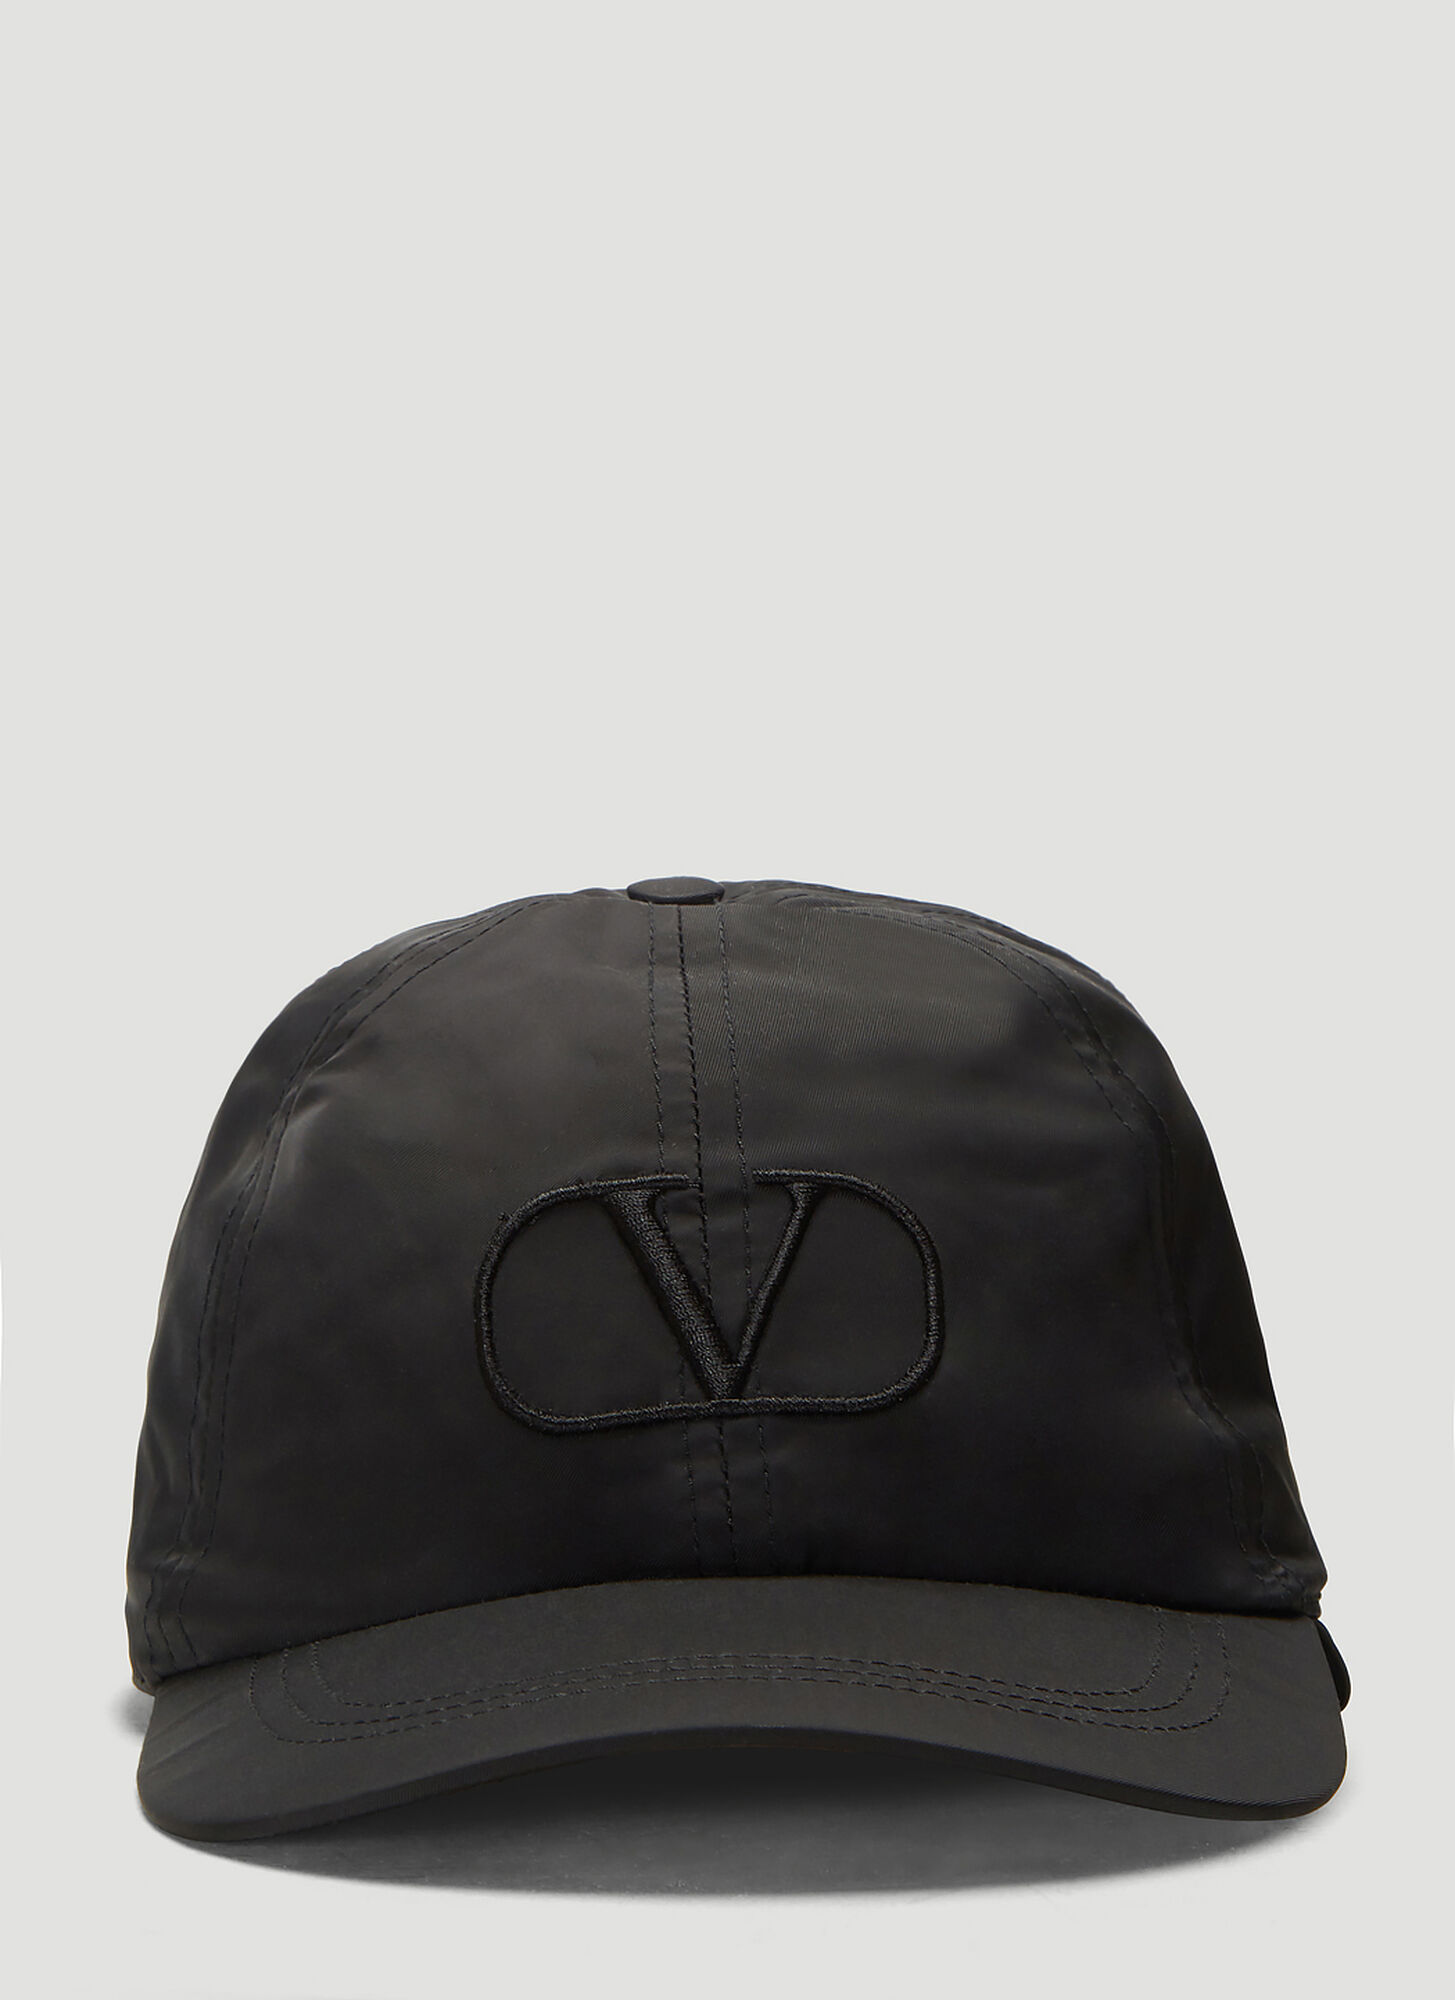 Valentino Nylon Aviator Cap in Black size 57 CM | The Fashionisto